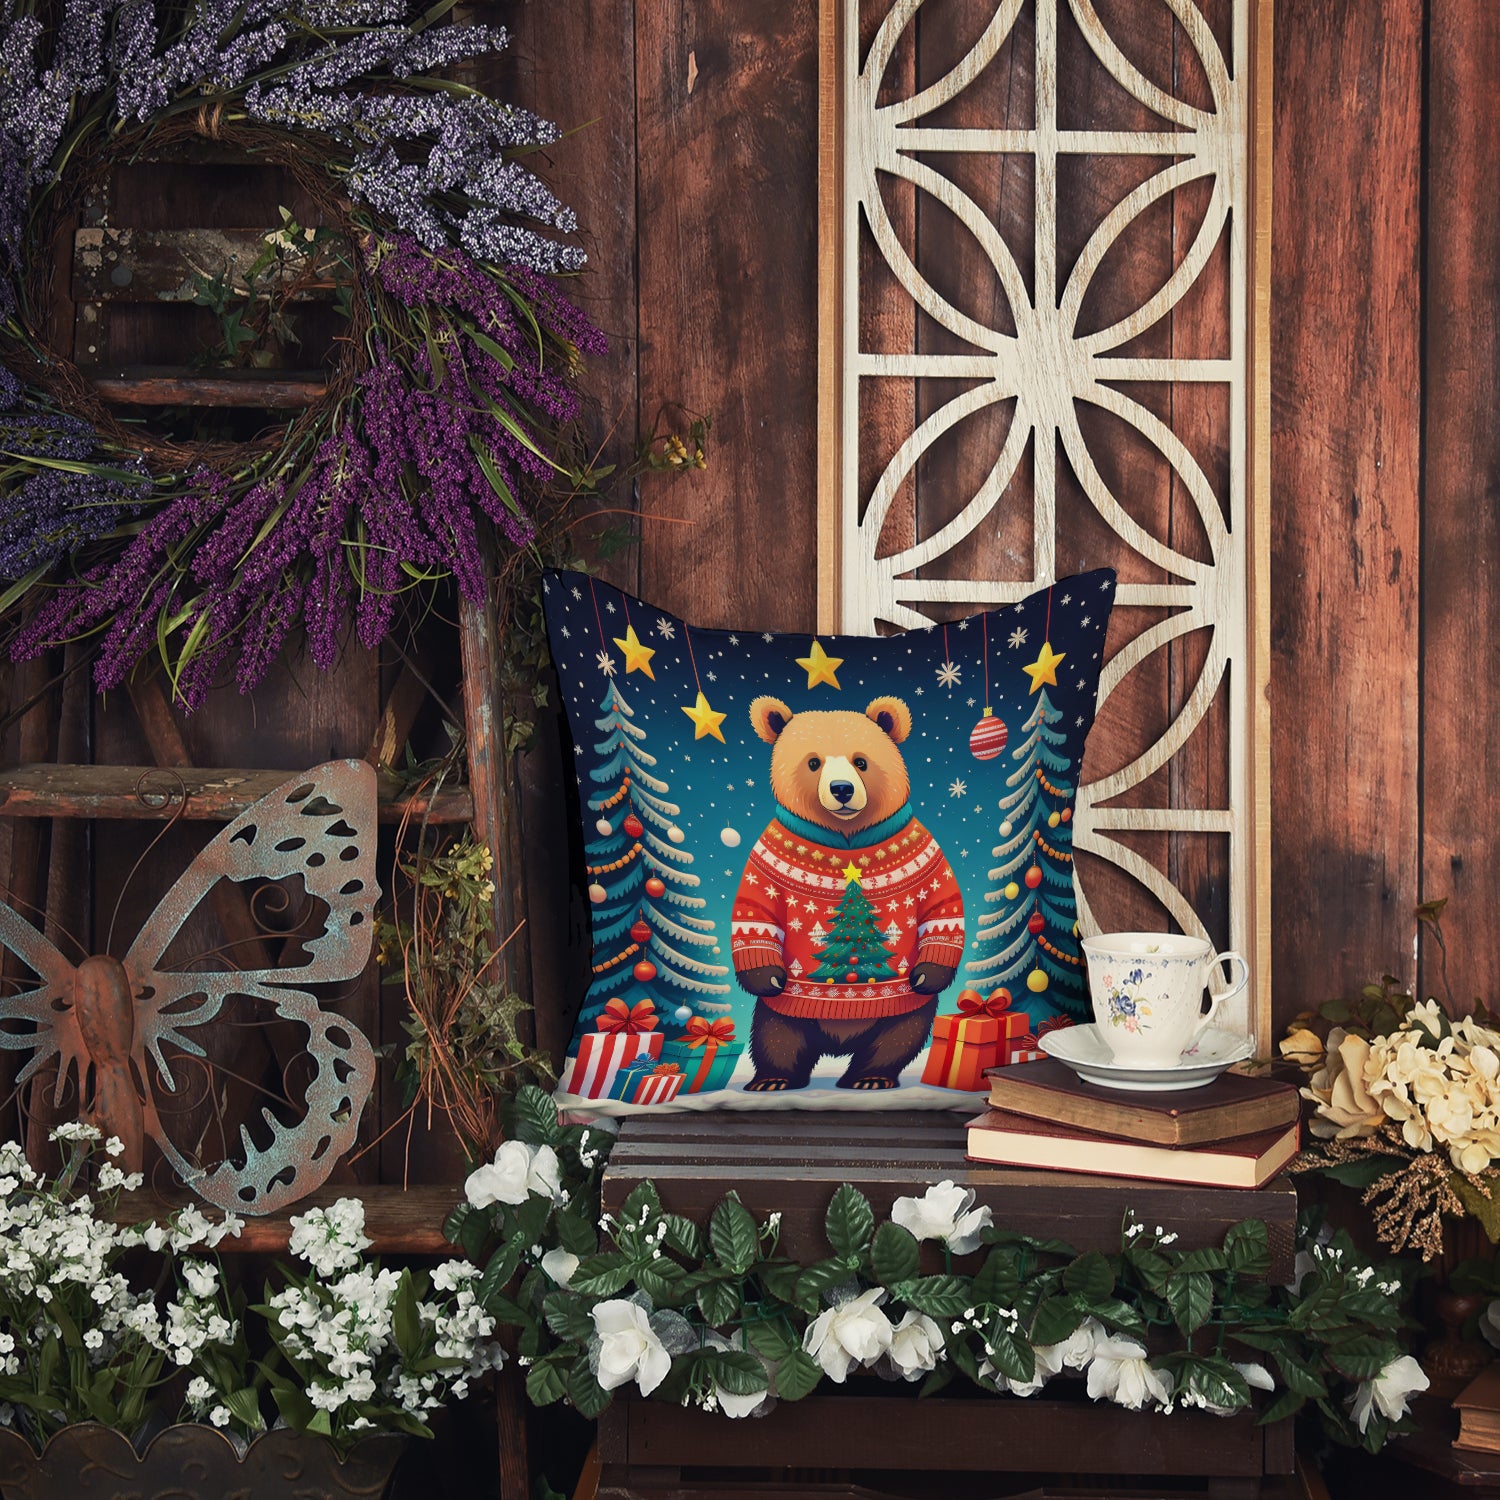 Bear Christmas Fabric Decorative Pillow